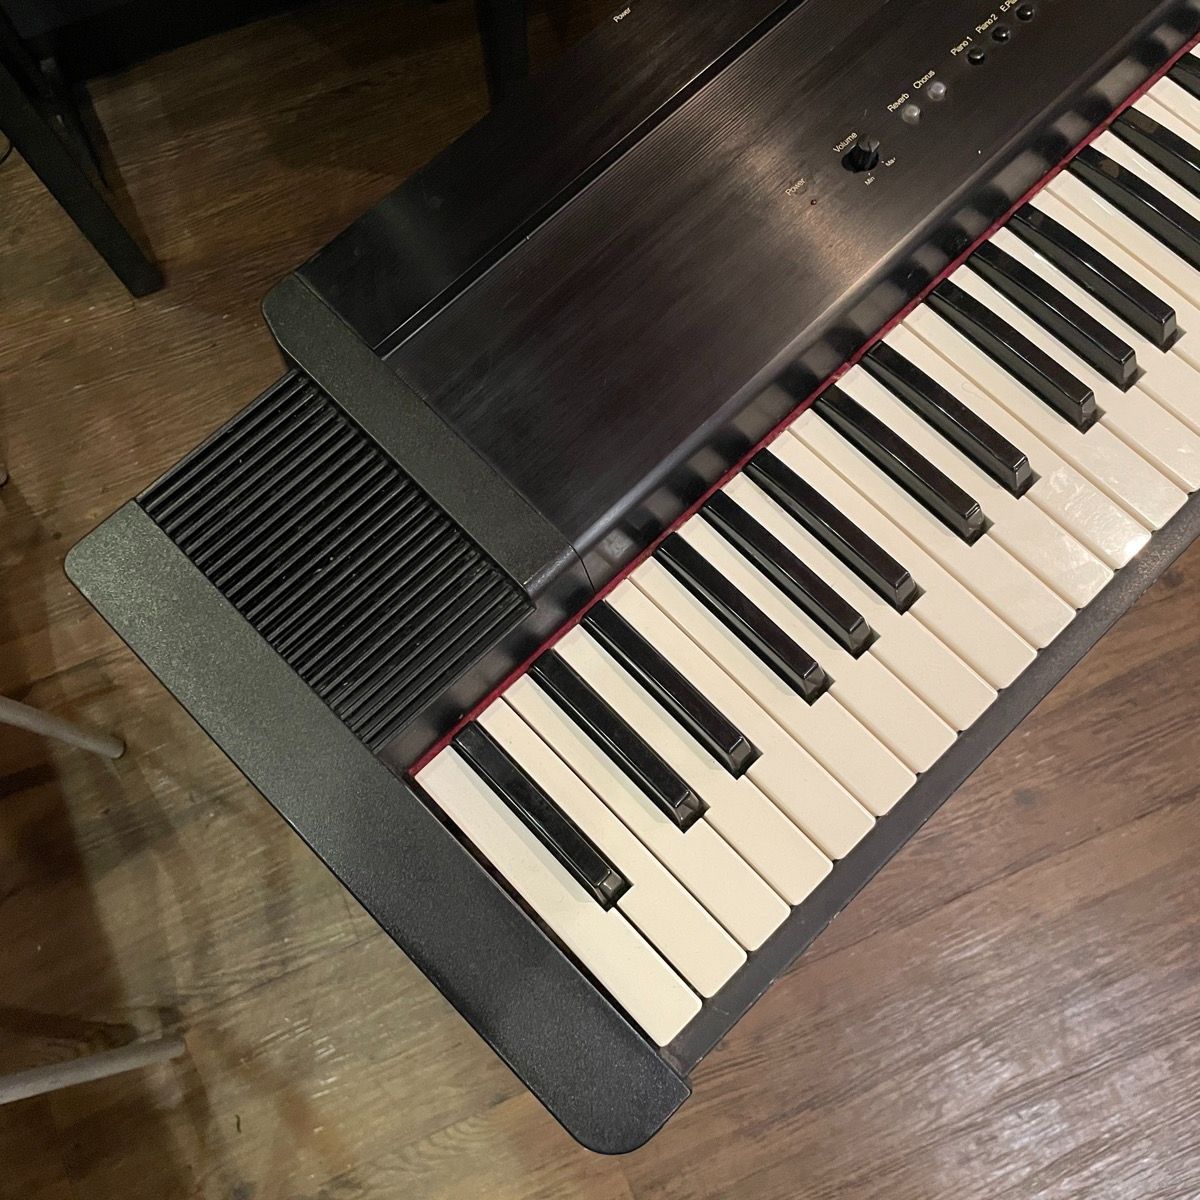 Roland デジタルピアノ EP-90 - 鍵盤楽器、ピアノ